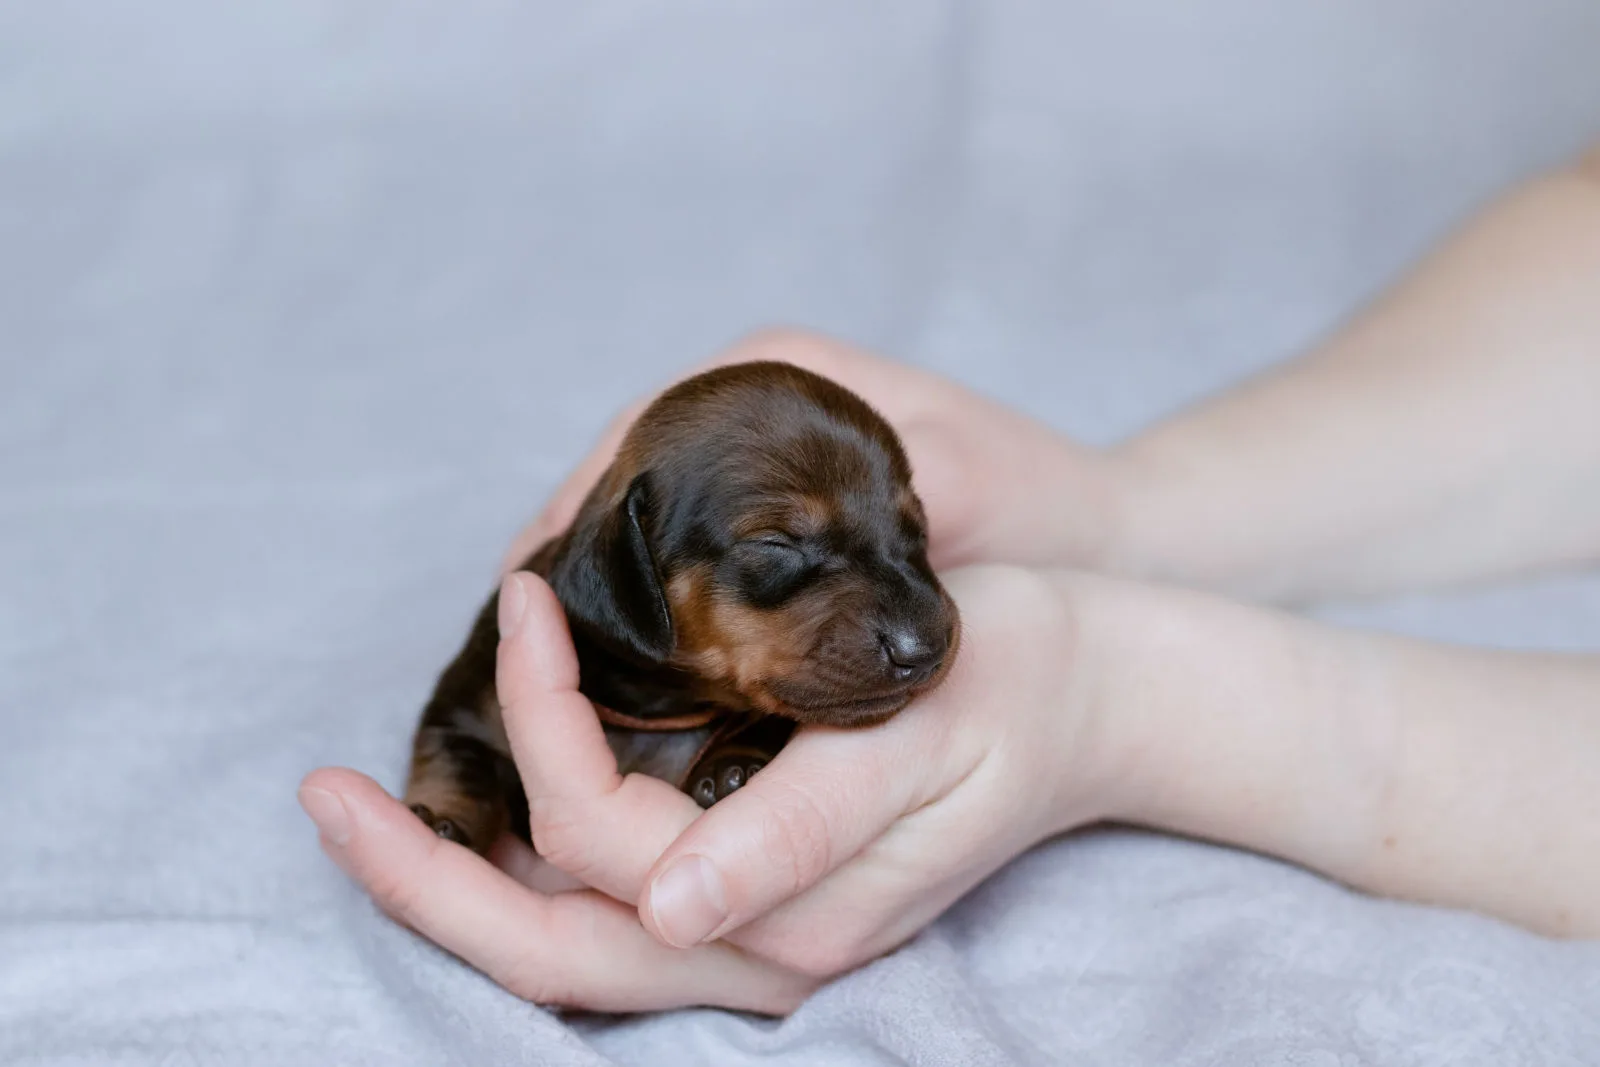 A newborn dachshund puppy is held in owner's hands